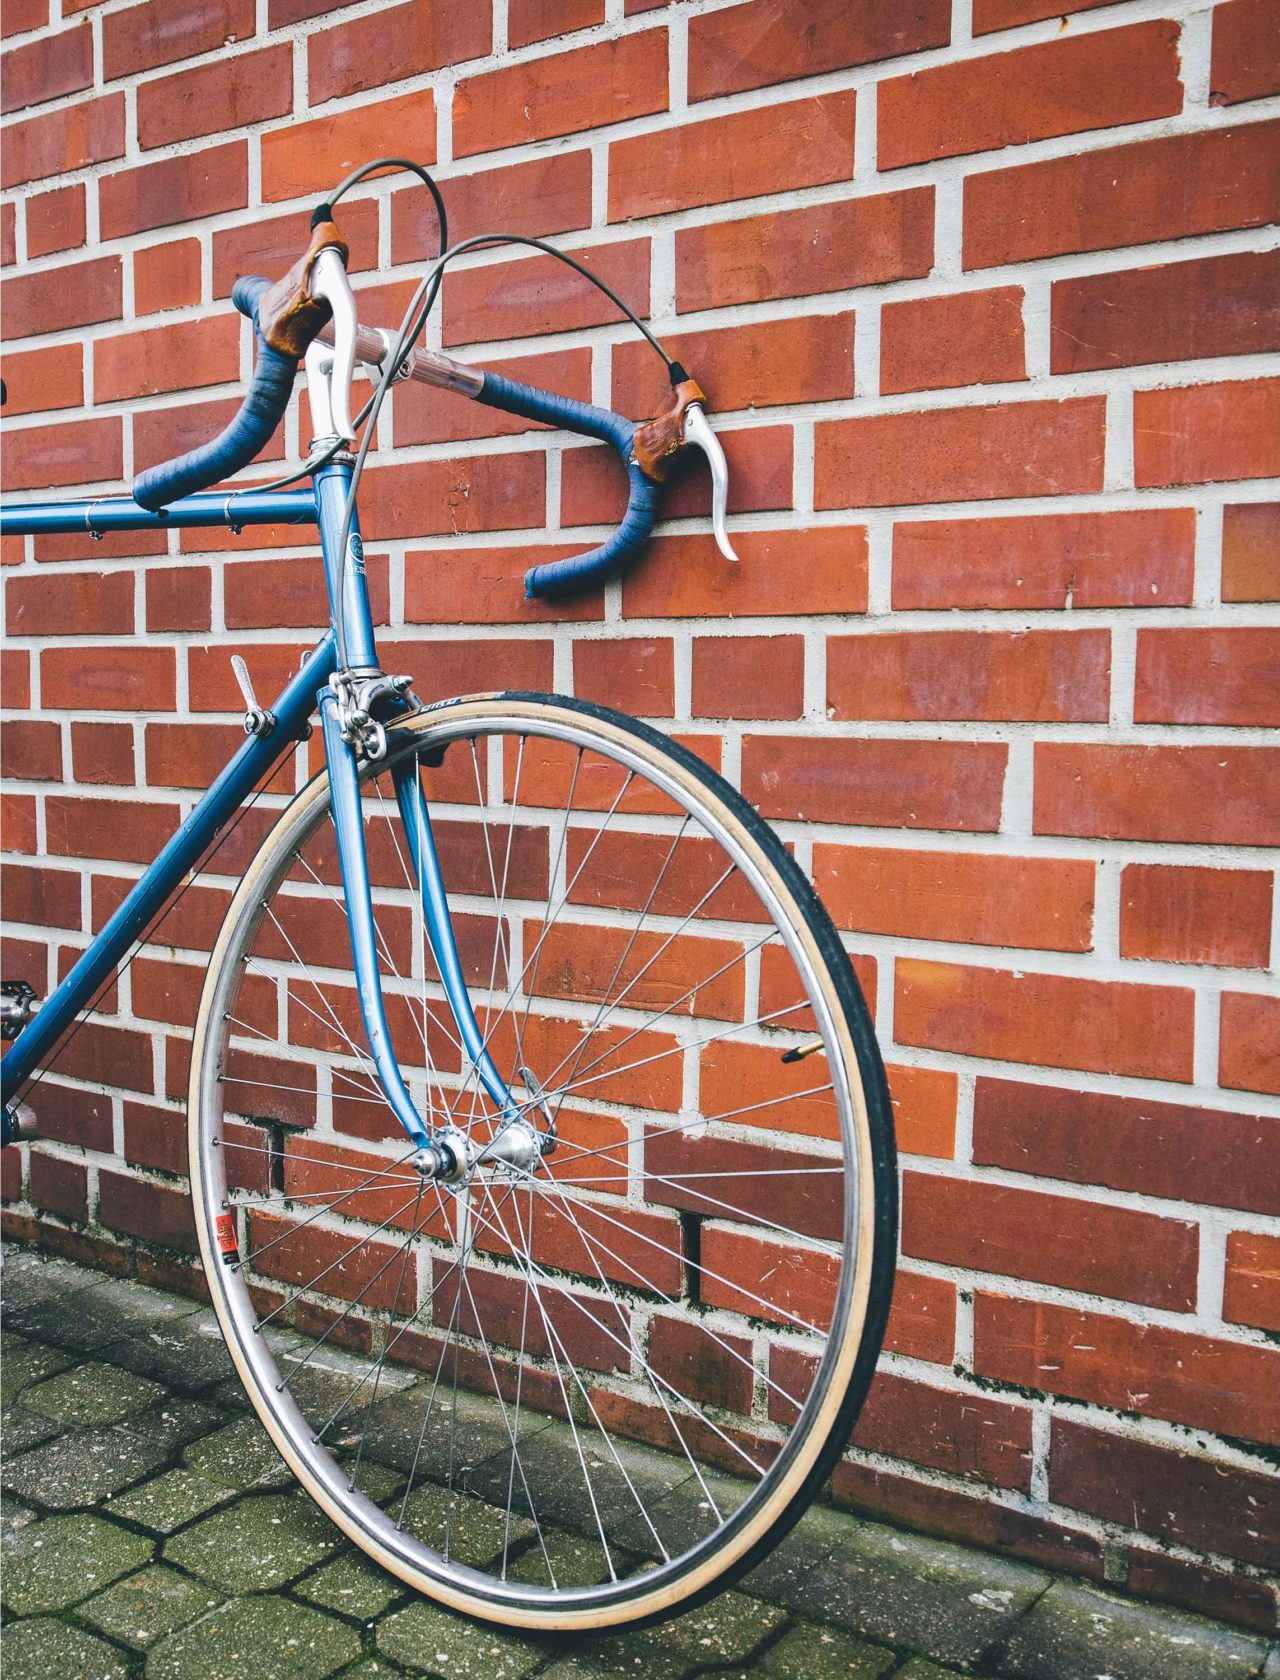 Ausschnitt vom Vorderreifen und Lenker eines blau lackierten Rennrads vor einer roten Backsteinfassade.